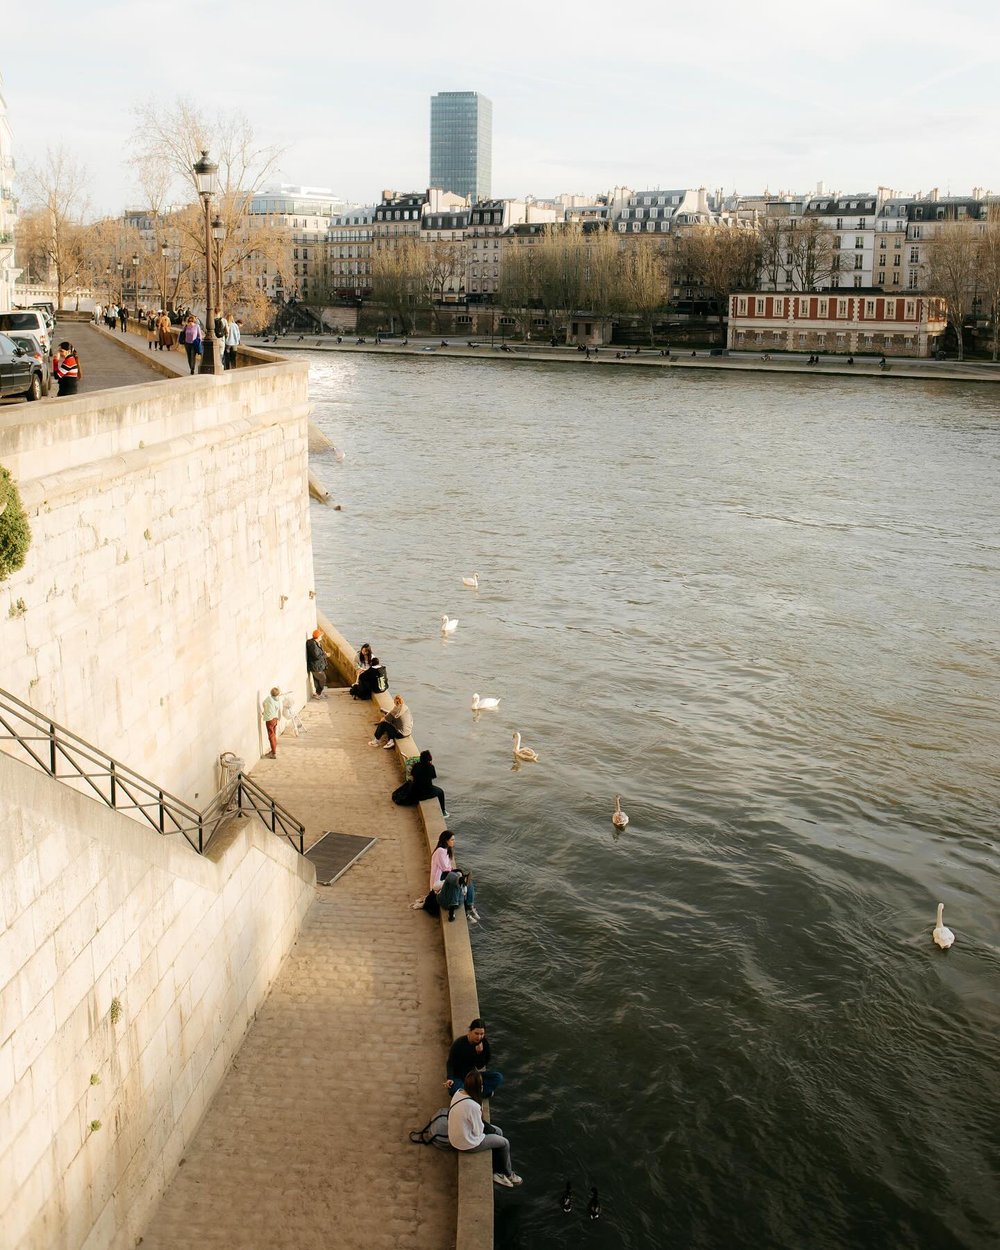 On the Seine

#seineriver #ilesaintlouis #springinparis